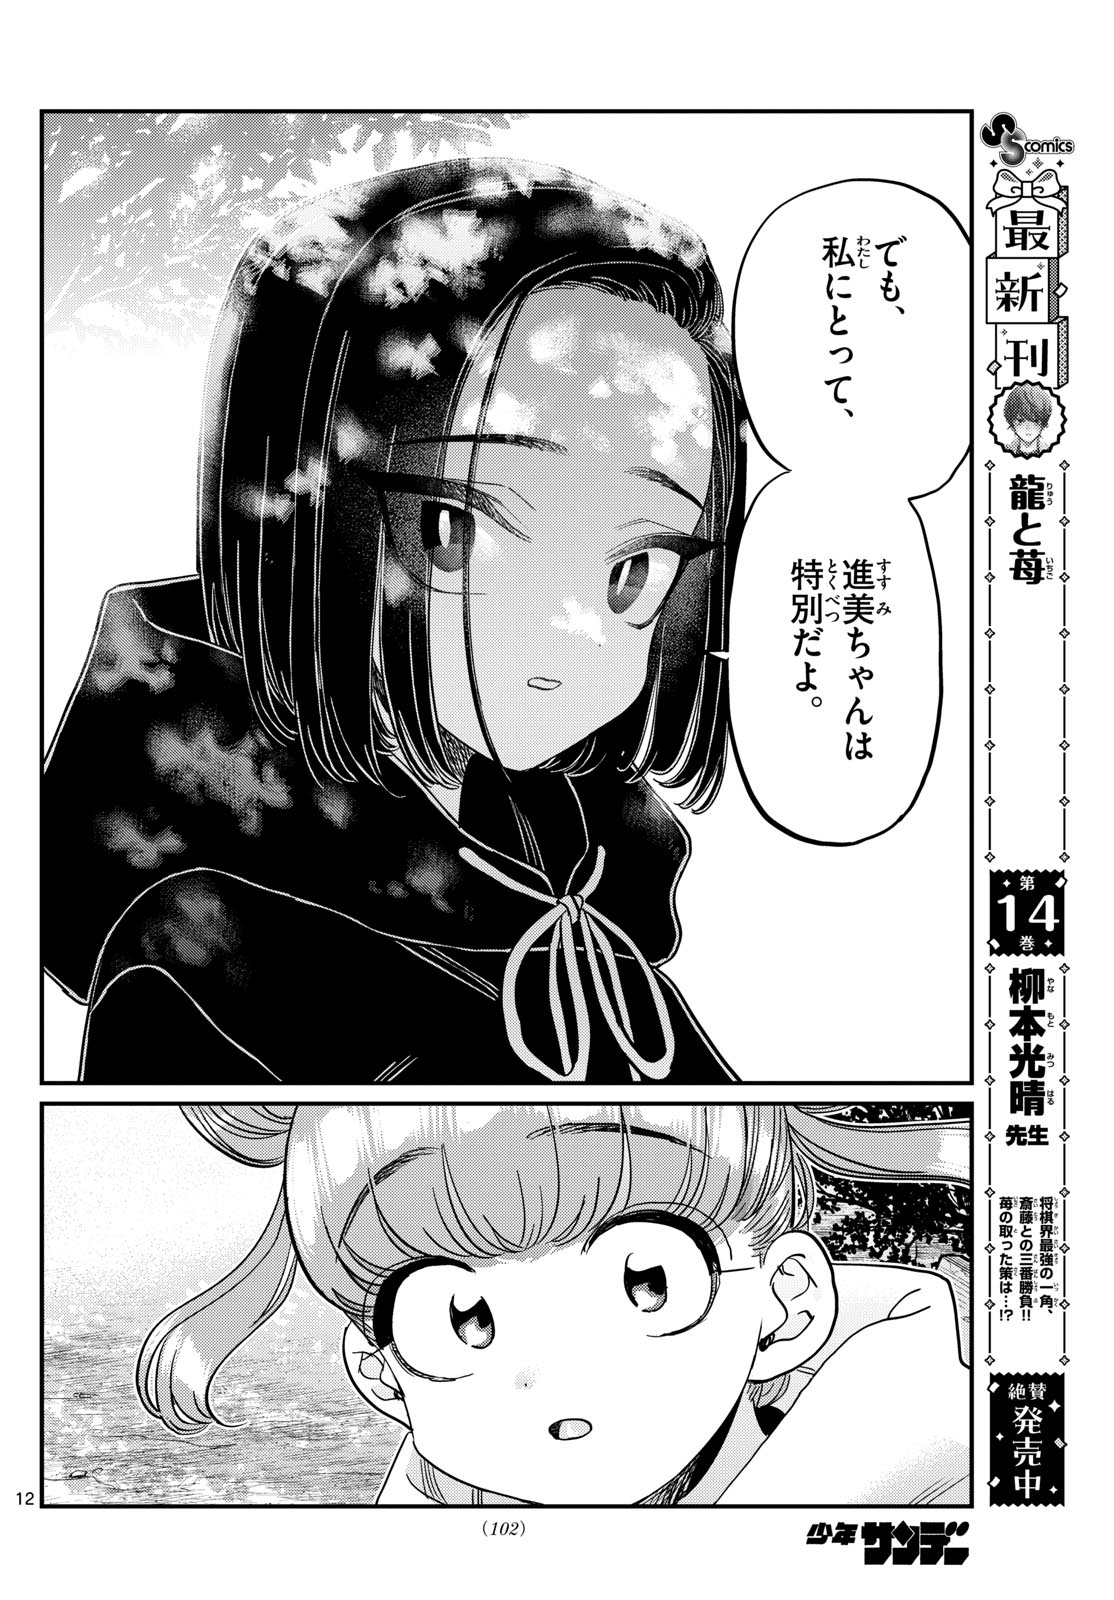 Komi-san wa Komyushou Desu - Chapter 436 - Page 12